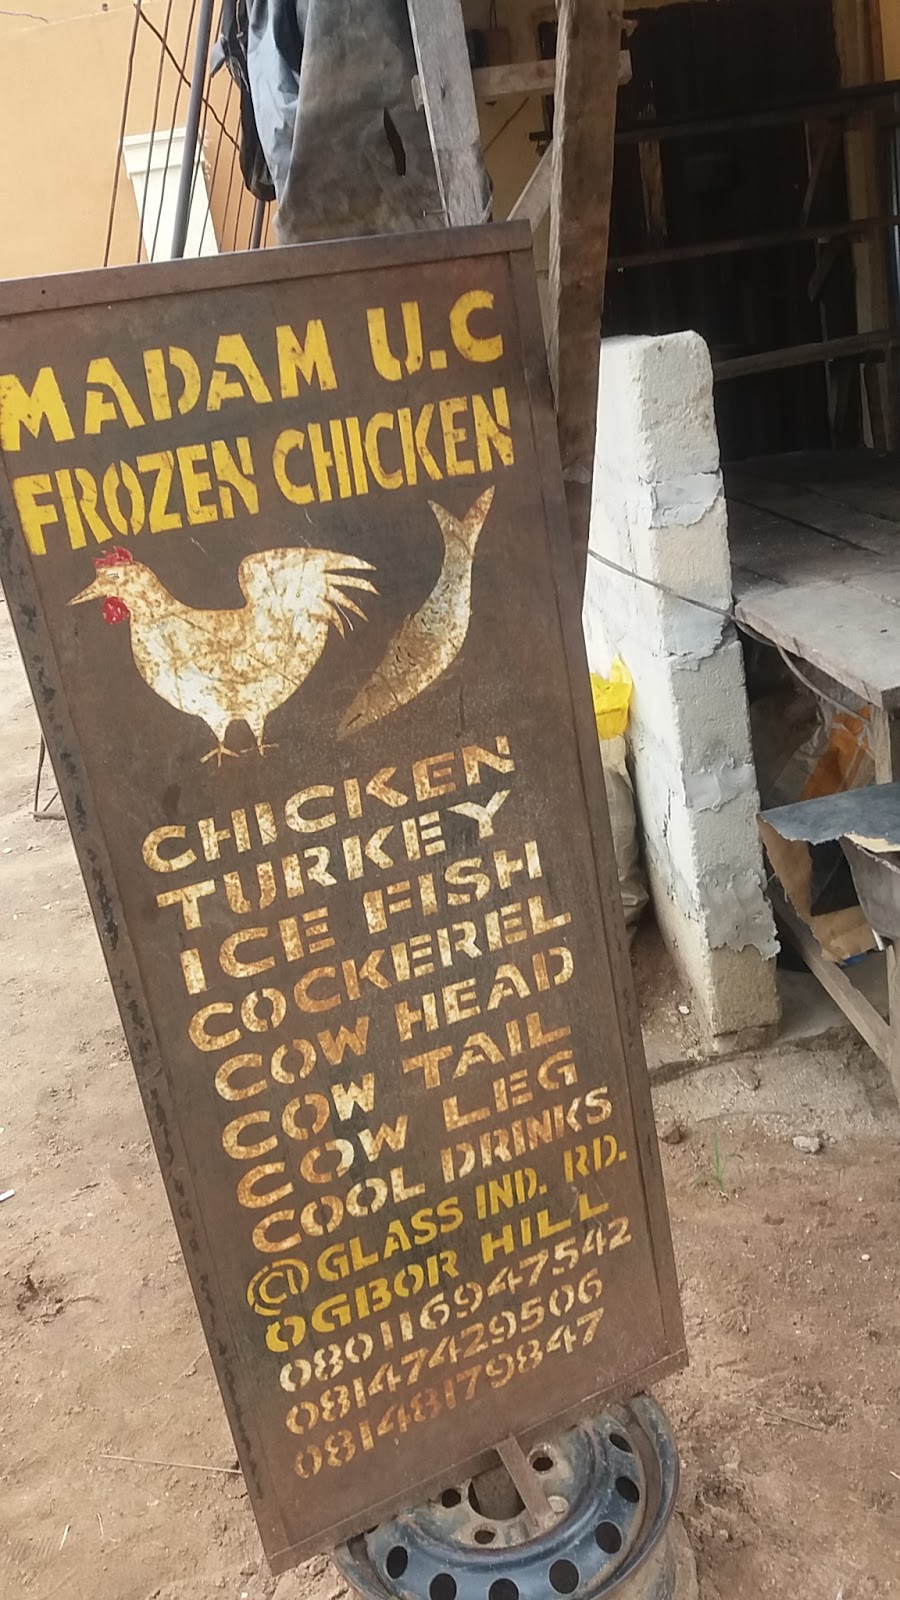 Madam U.C Frozen Chicken